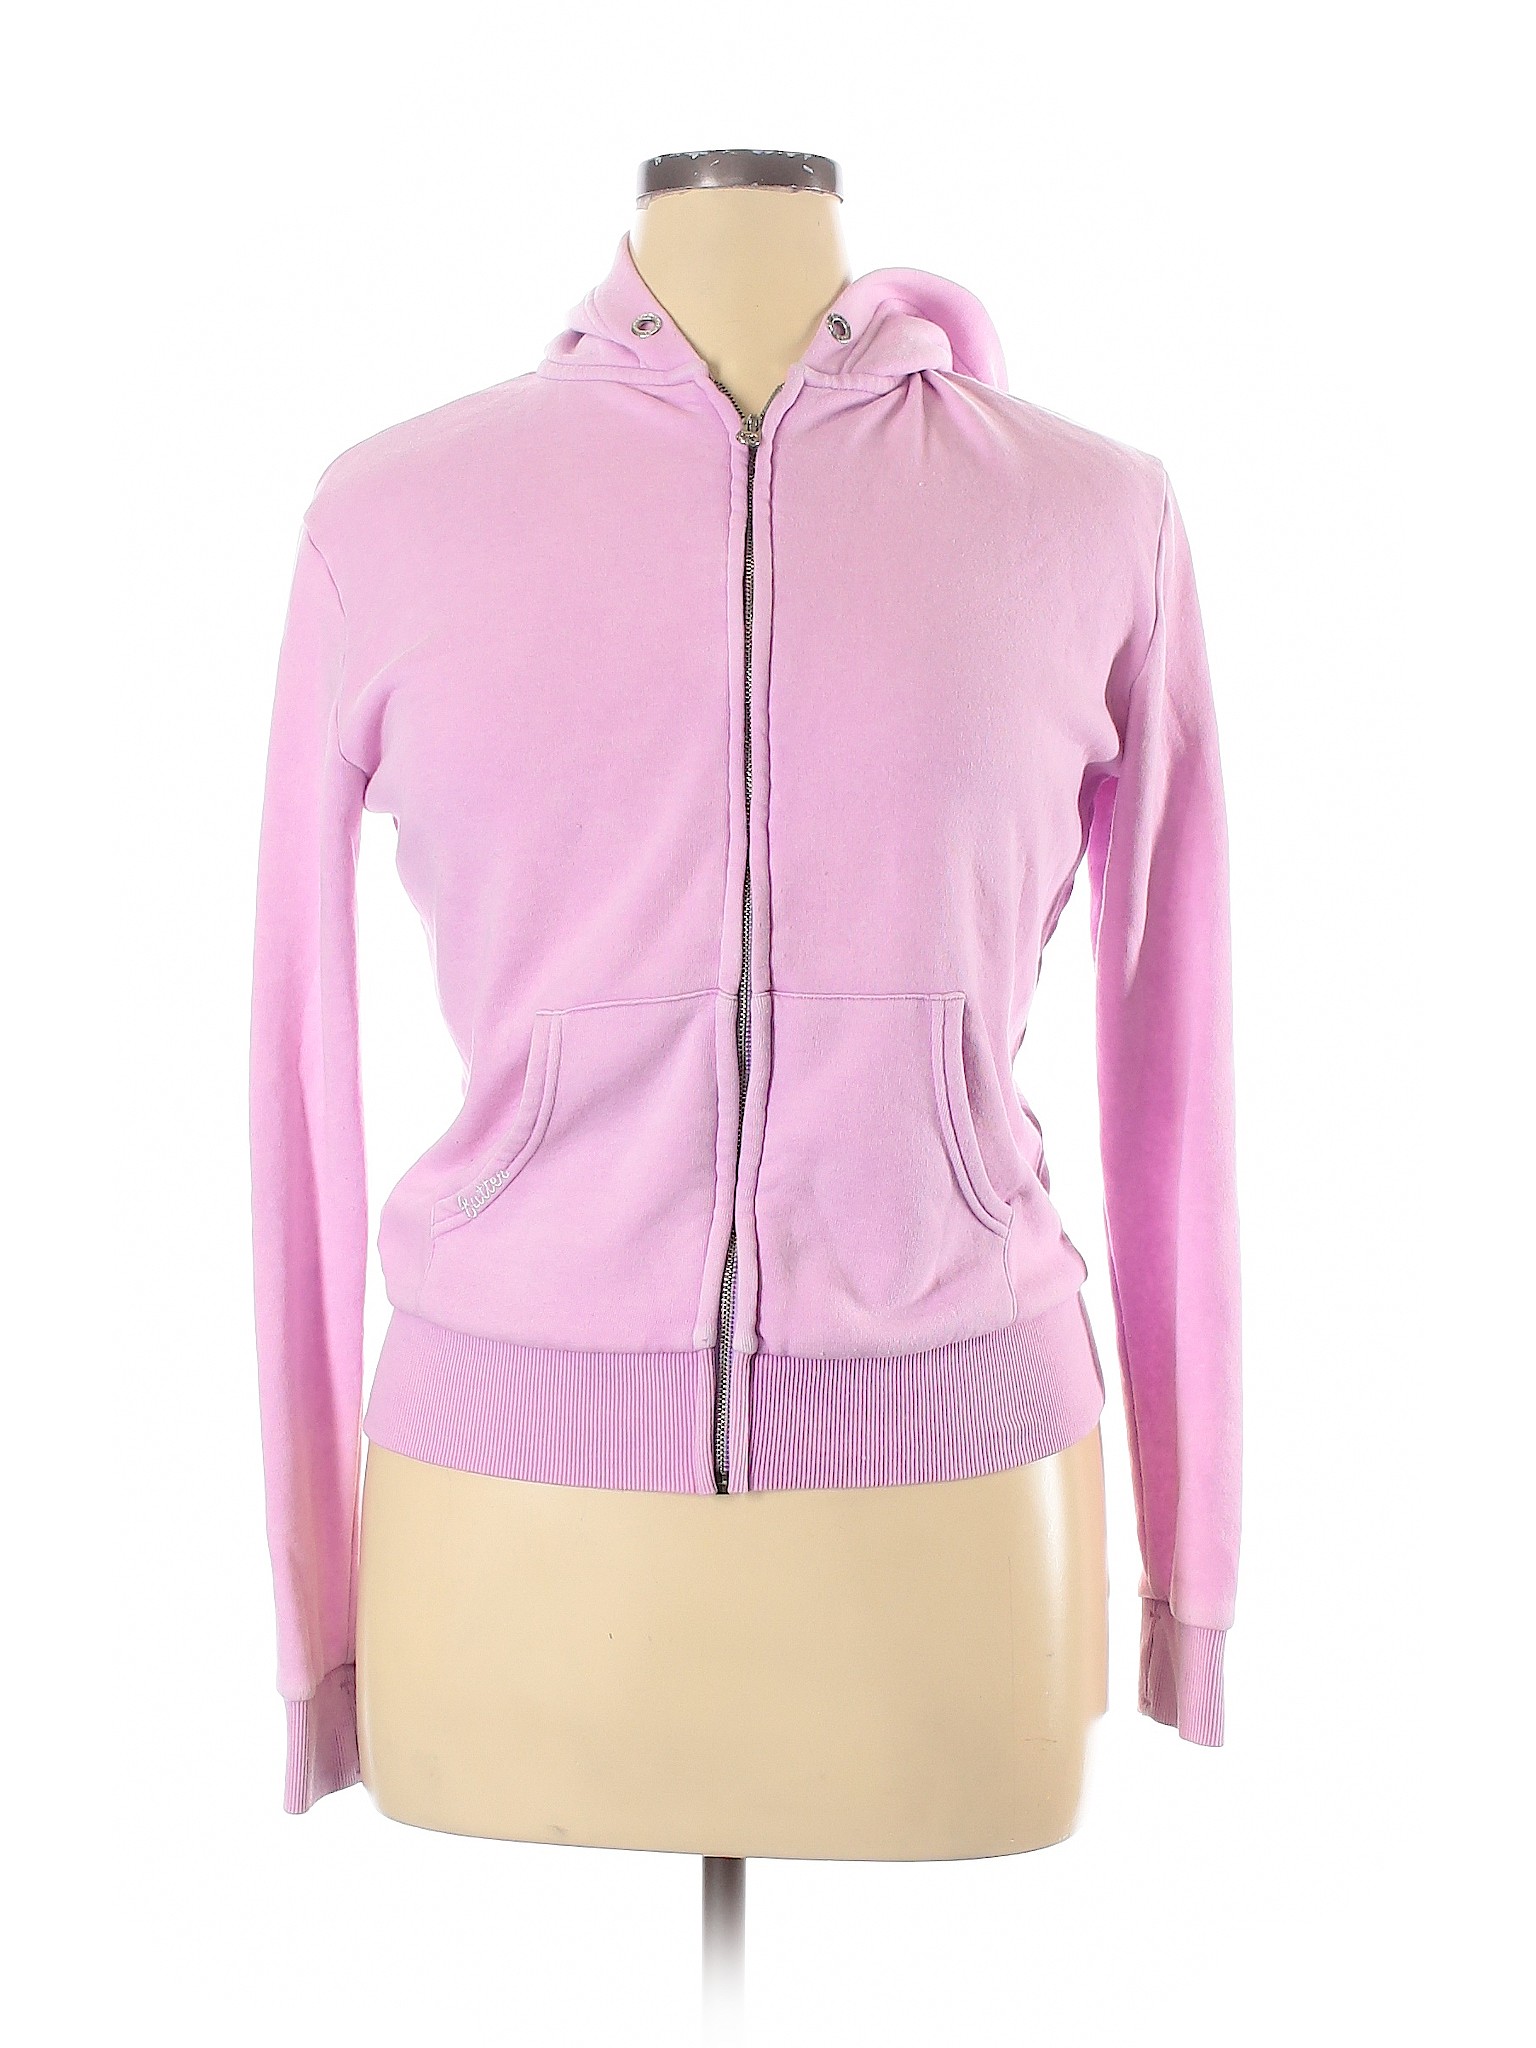 Butter Women Pink Zip Up Hoodie XL | eBay